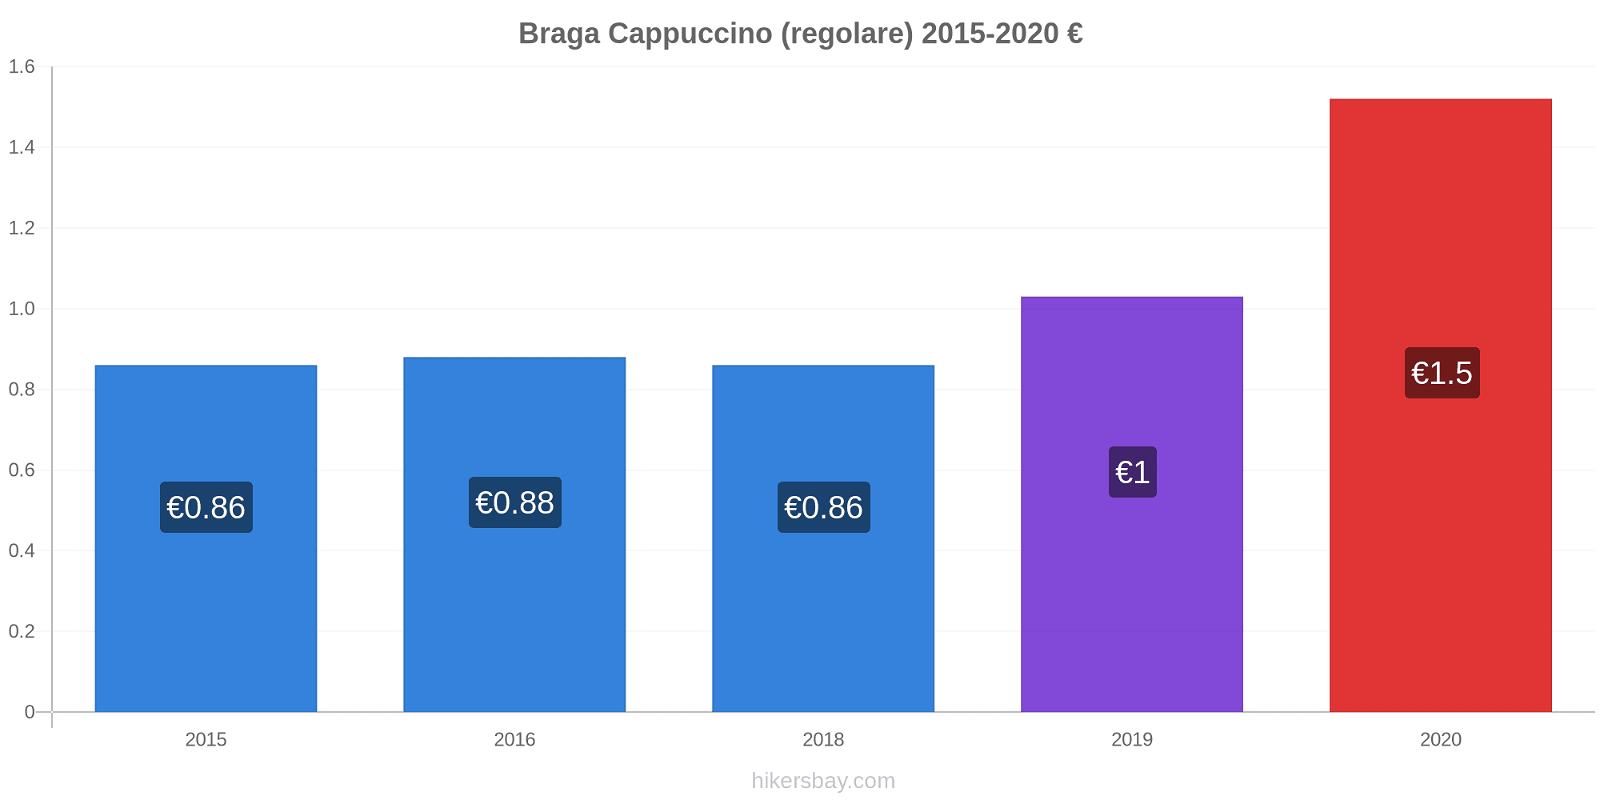 Braga variazioni di prezzo Cappuccino (normale) hikersbay.com